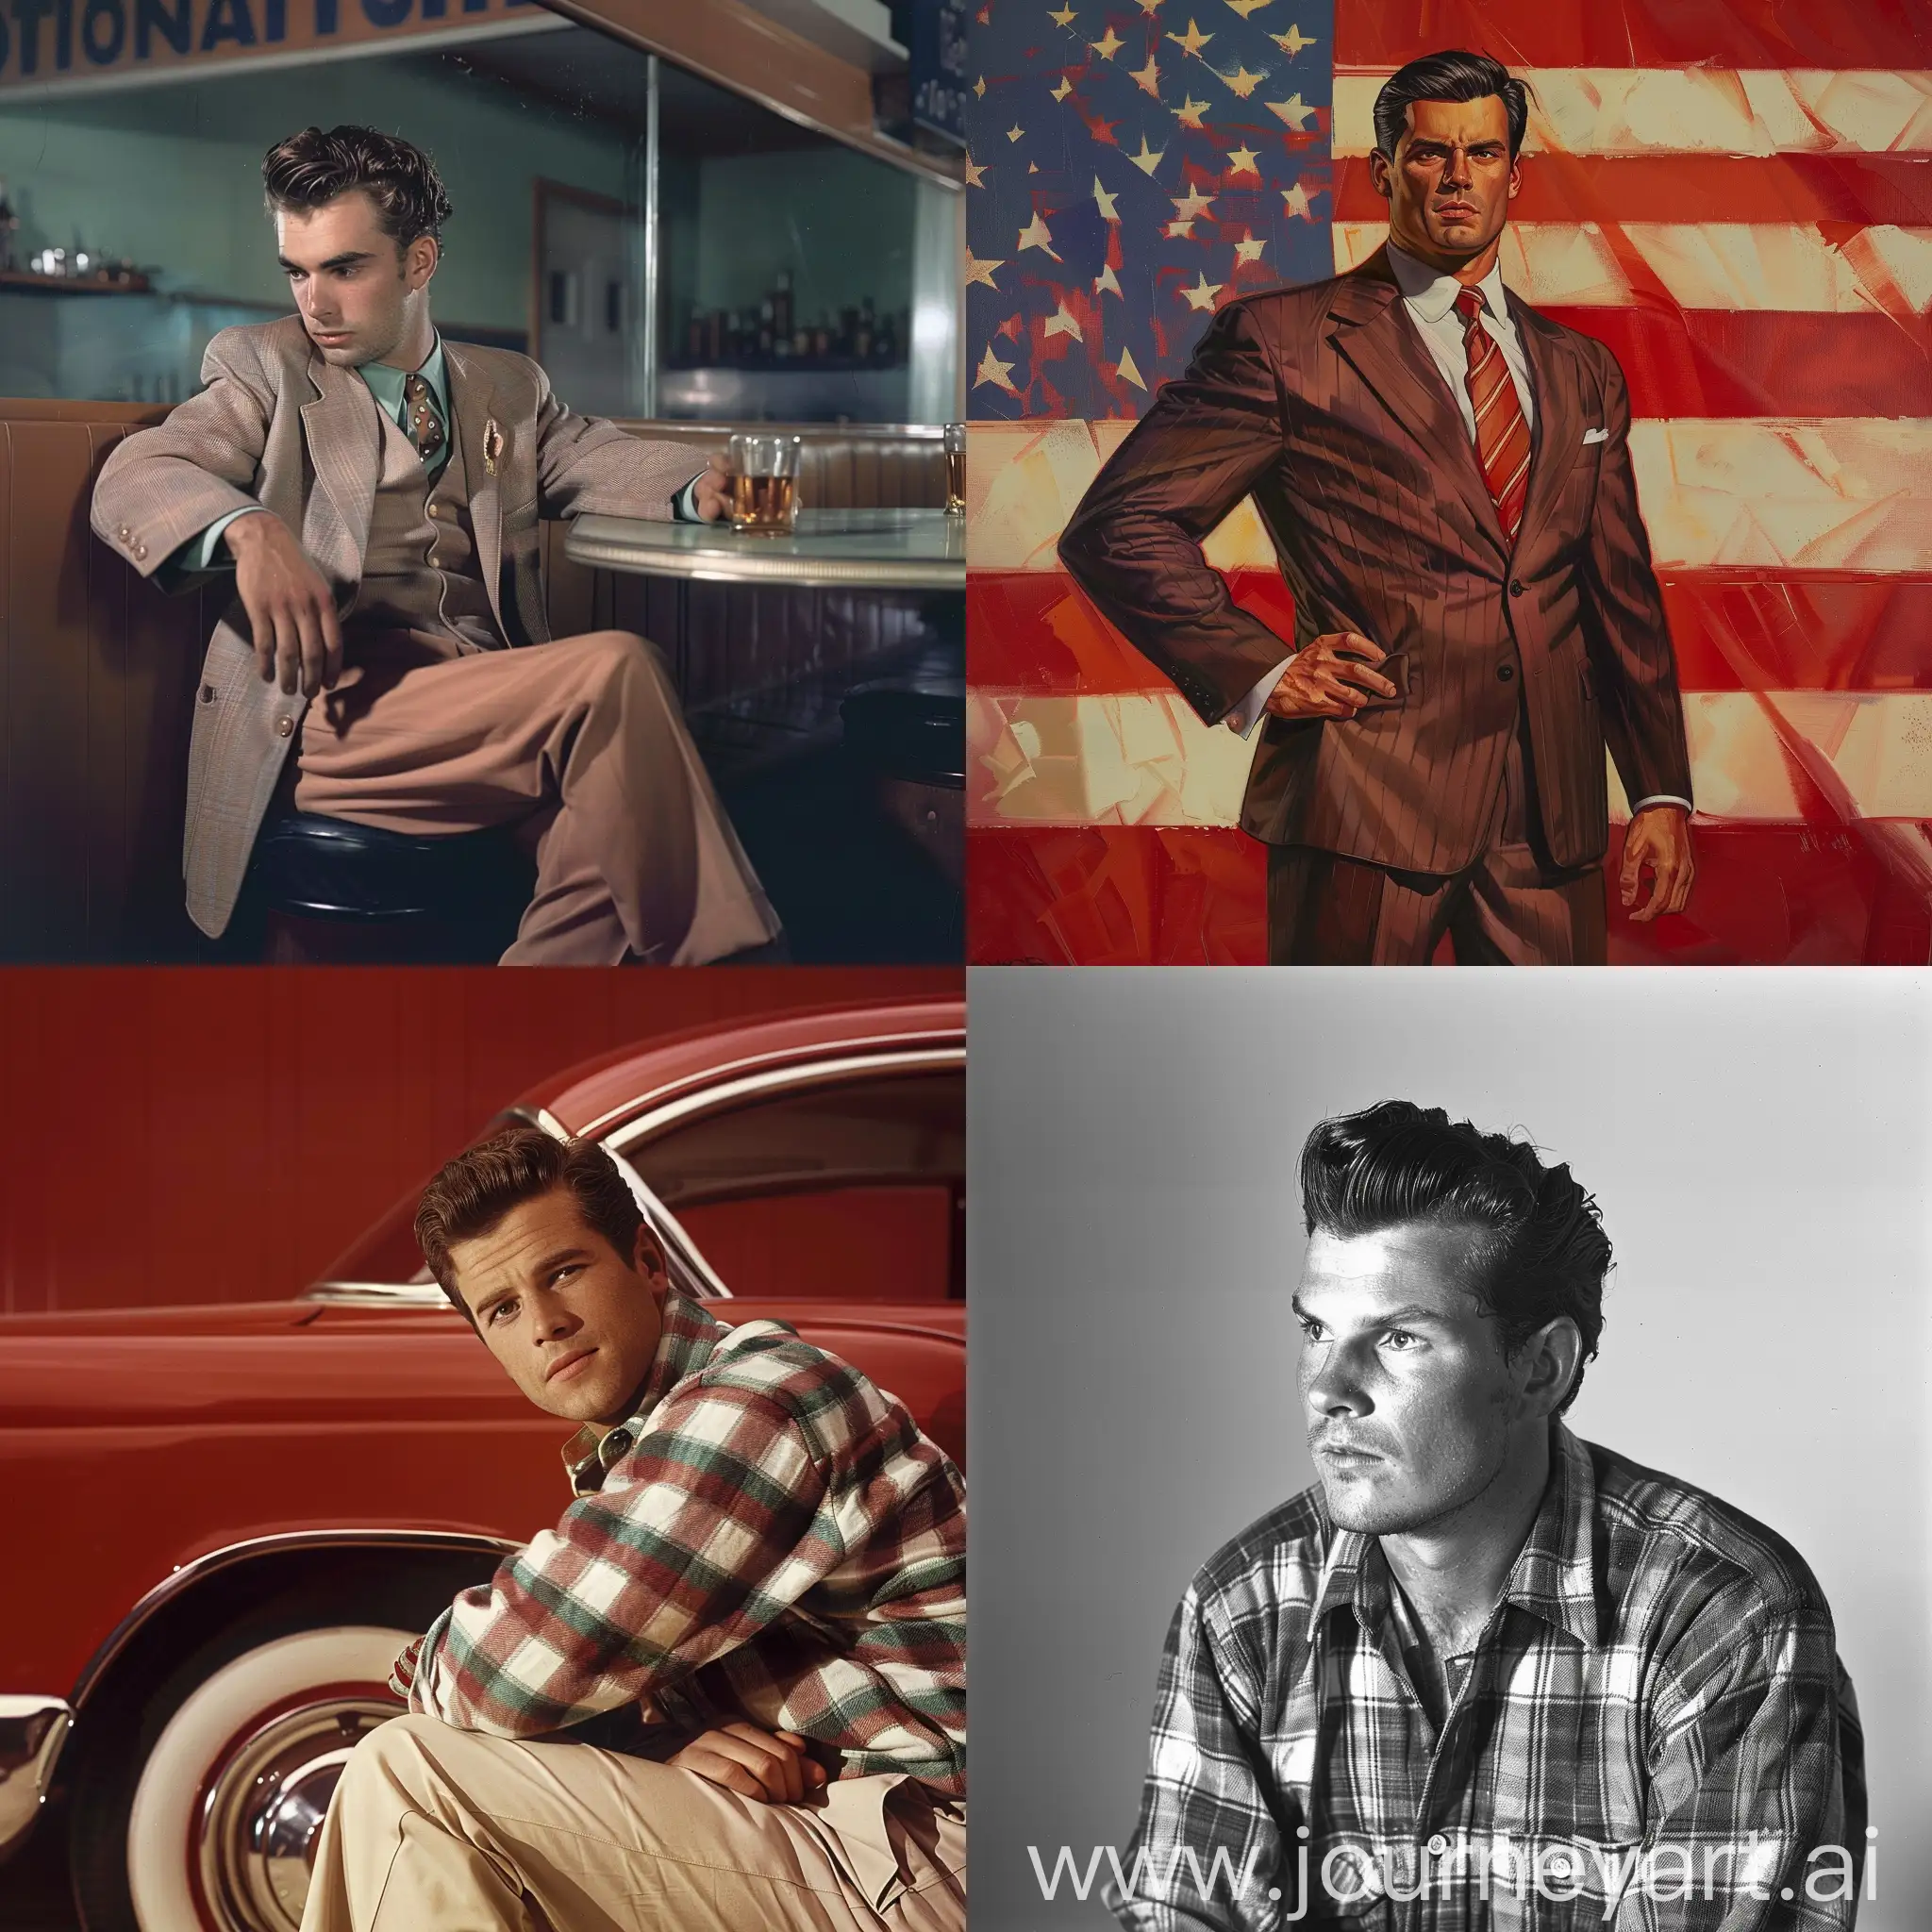 1950s-American-Man-in-Vintage-Car